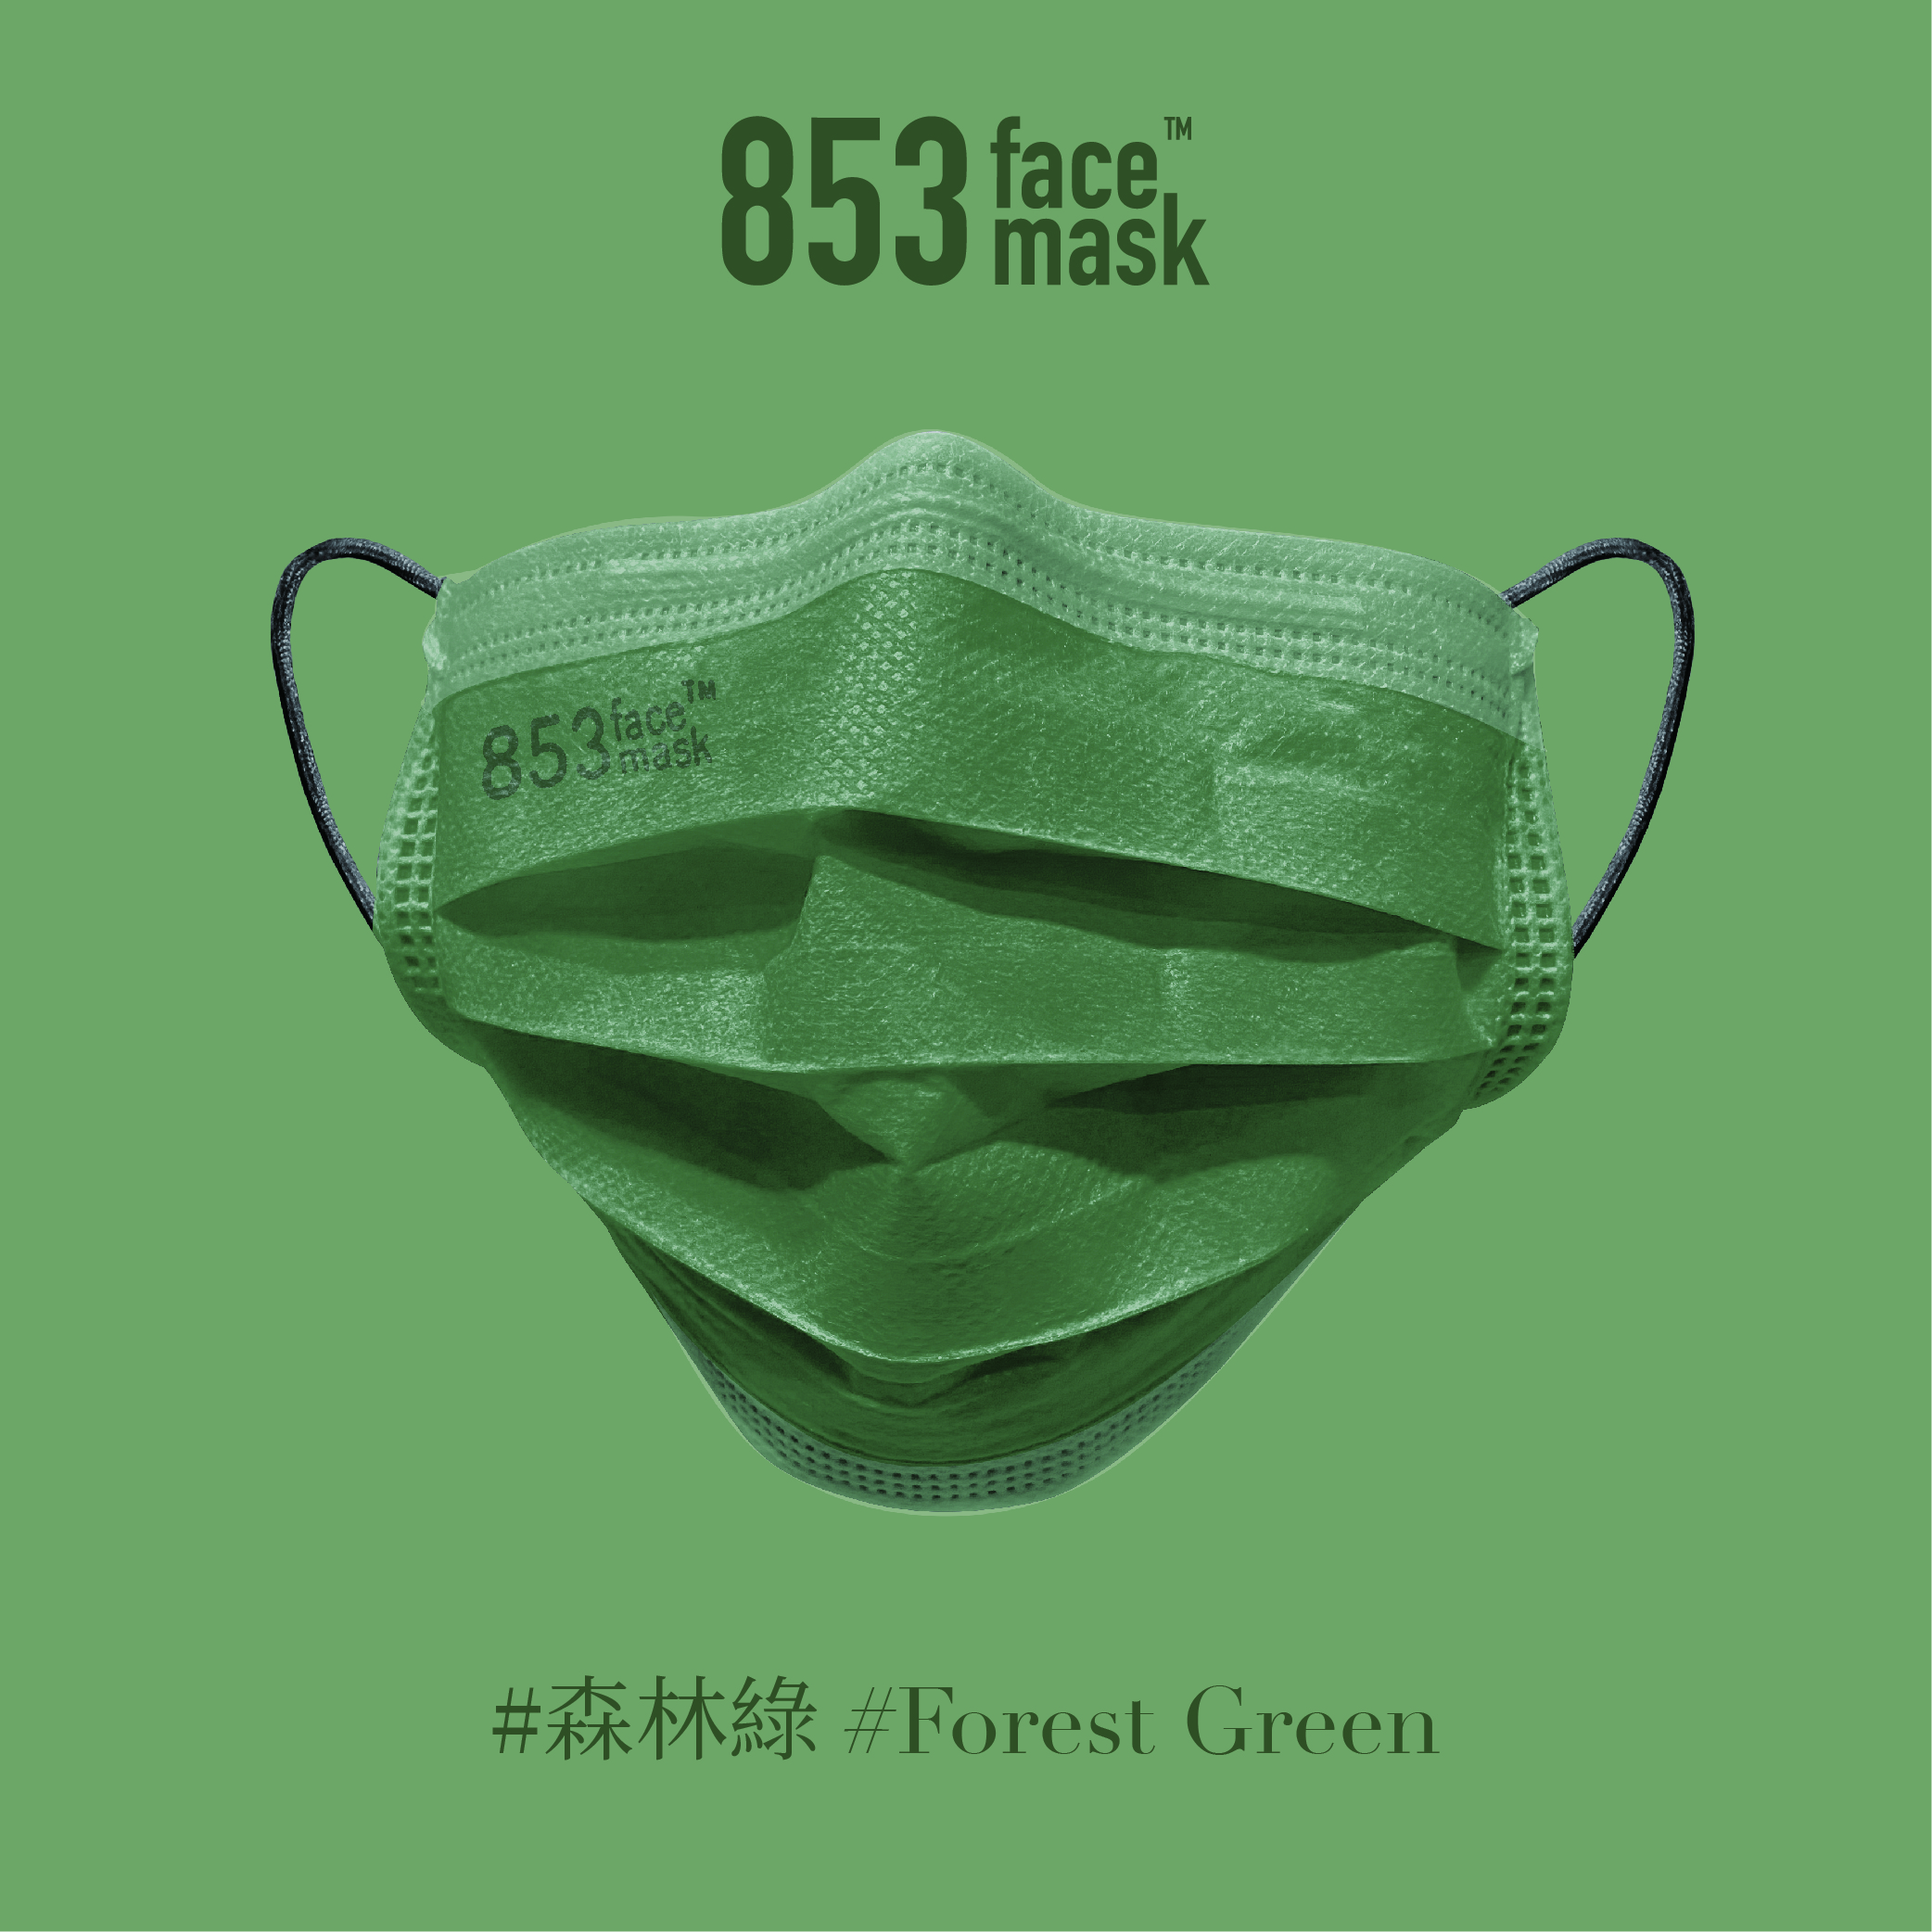 ASTM Level 3 口罩（森林綠）非獨立包裝10片